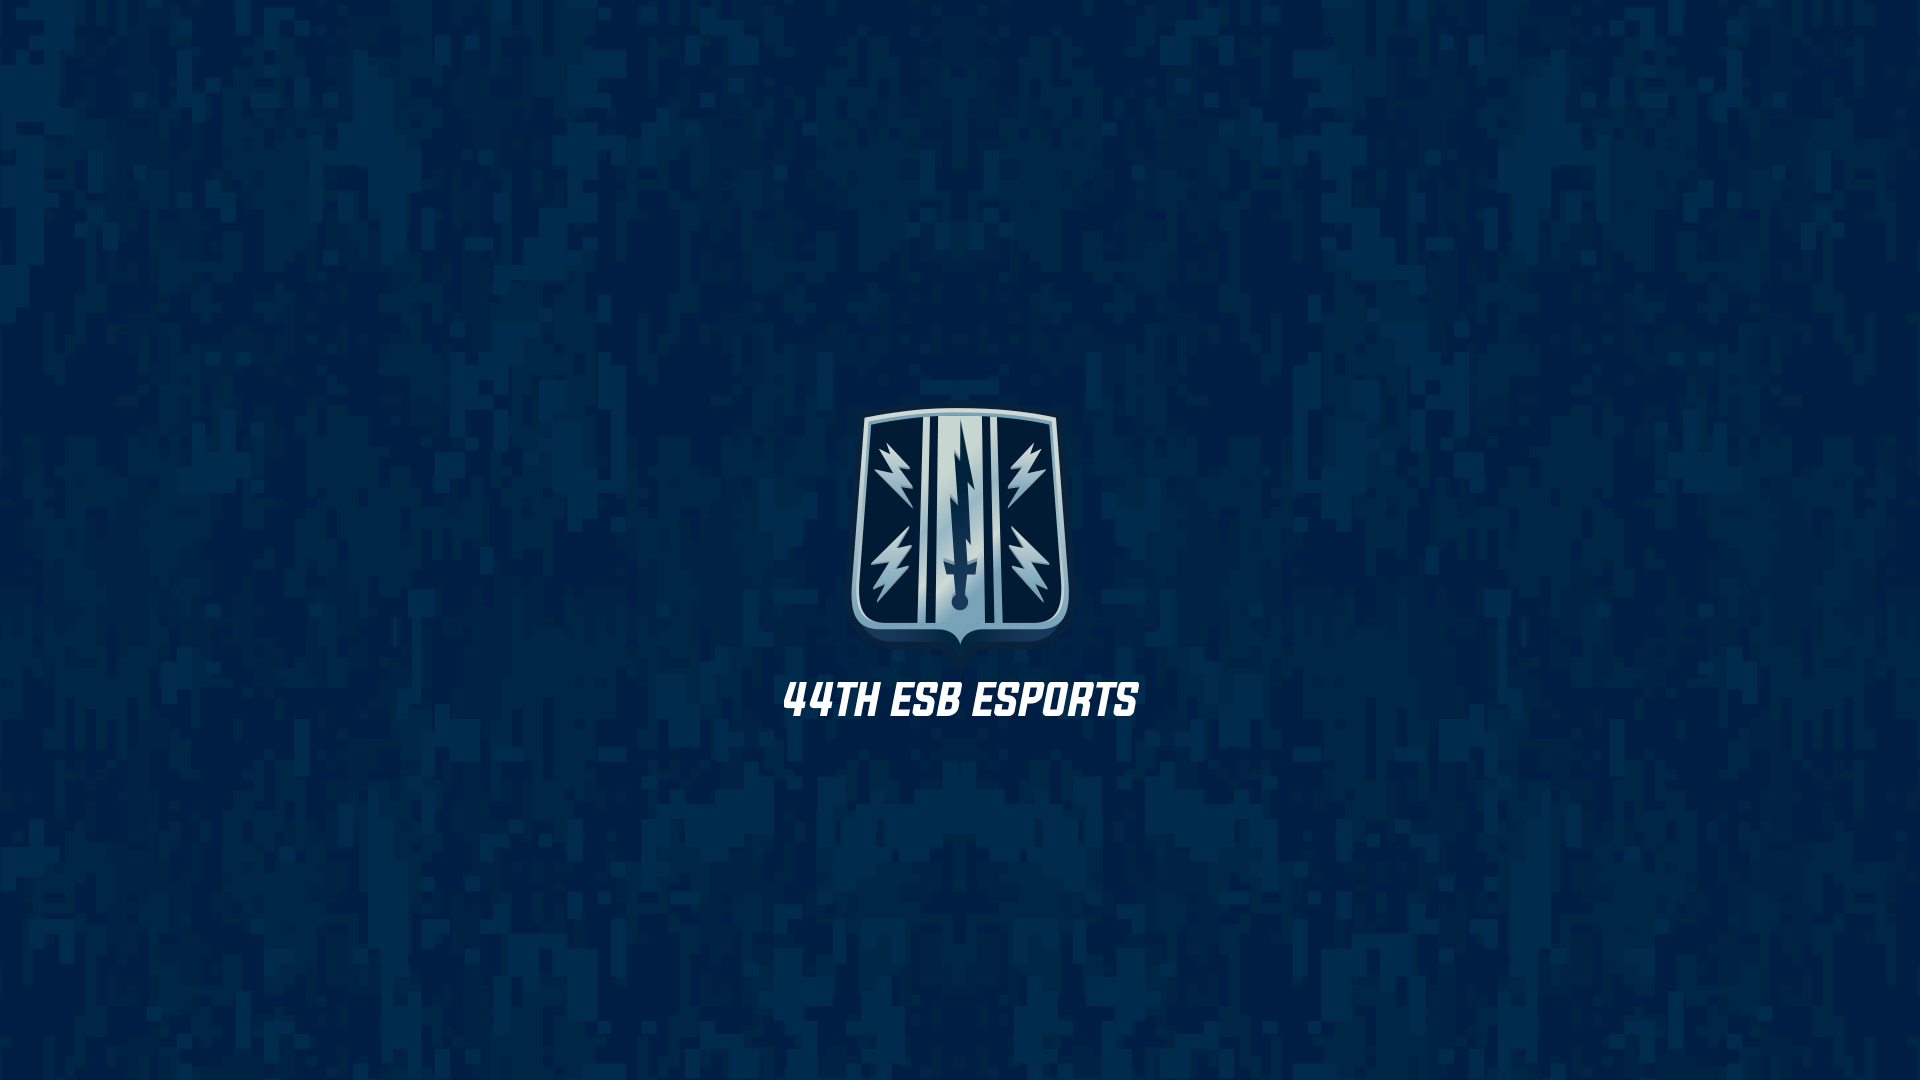 44th ESB Esports